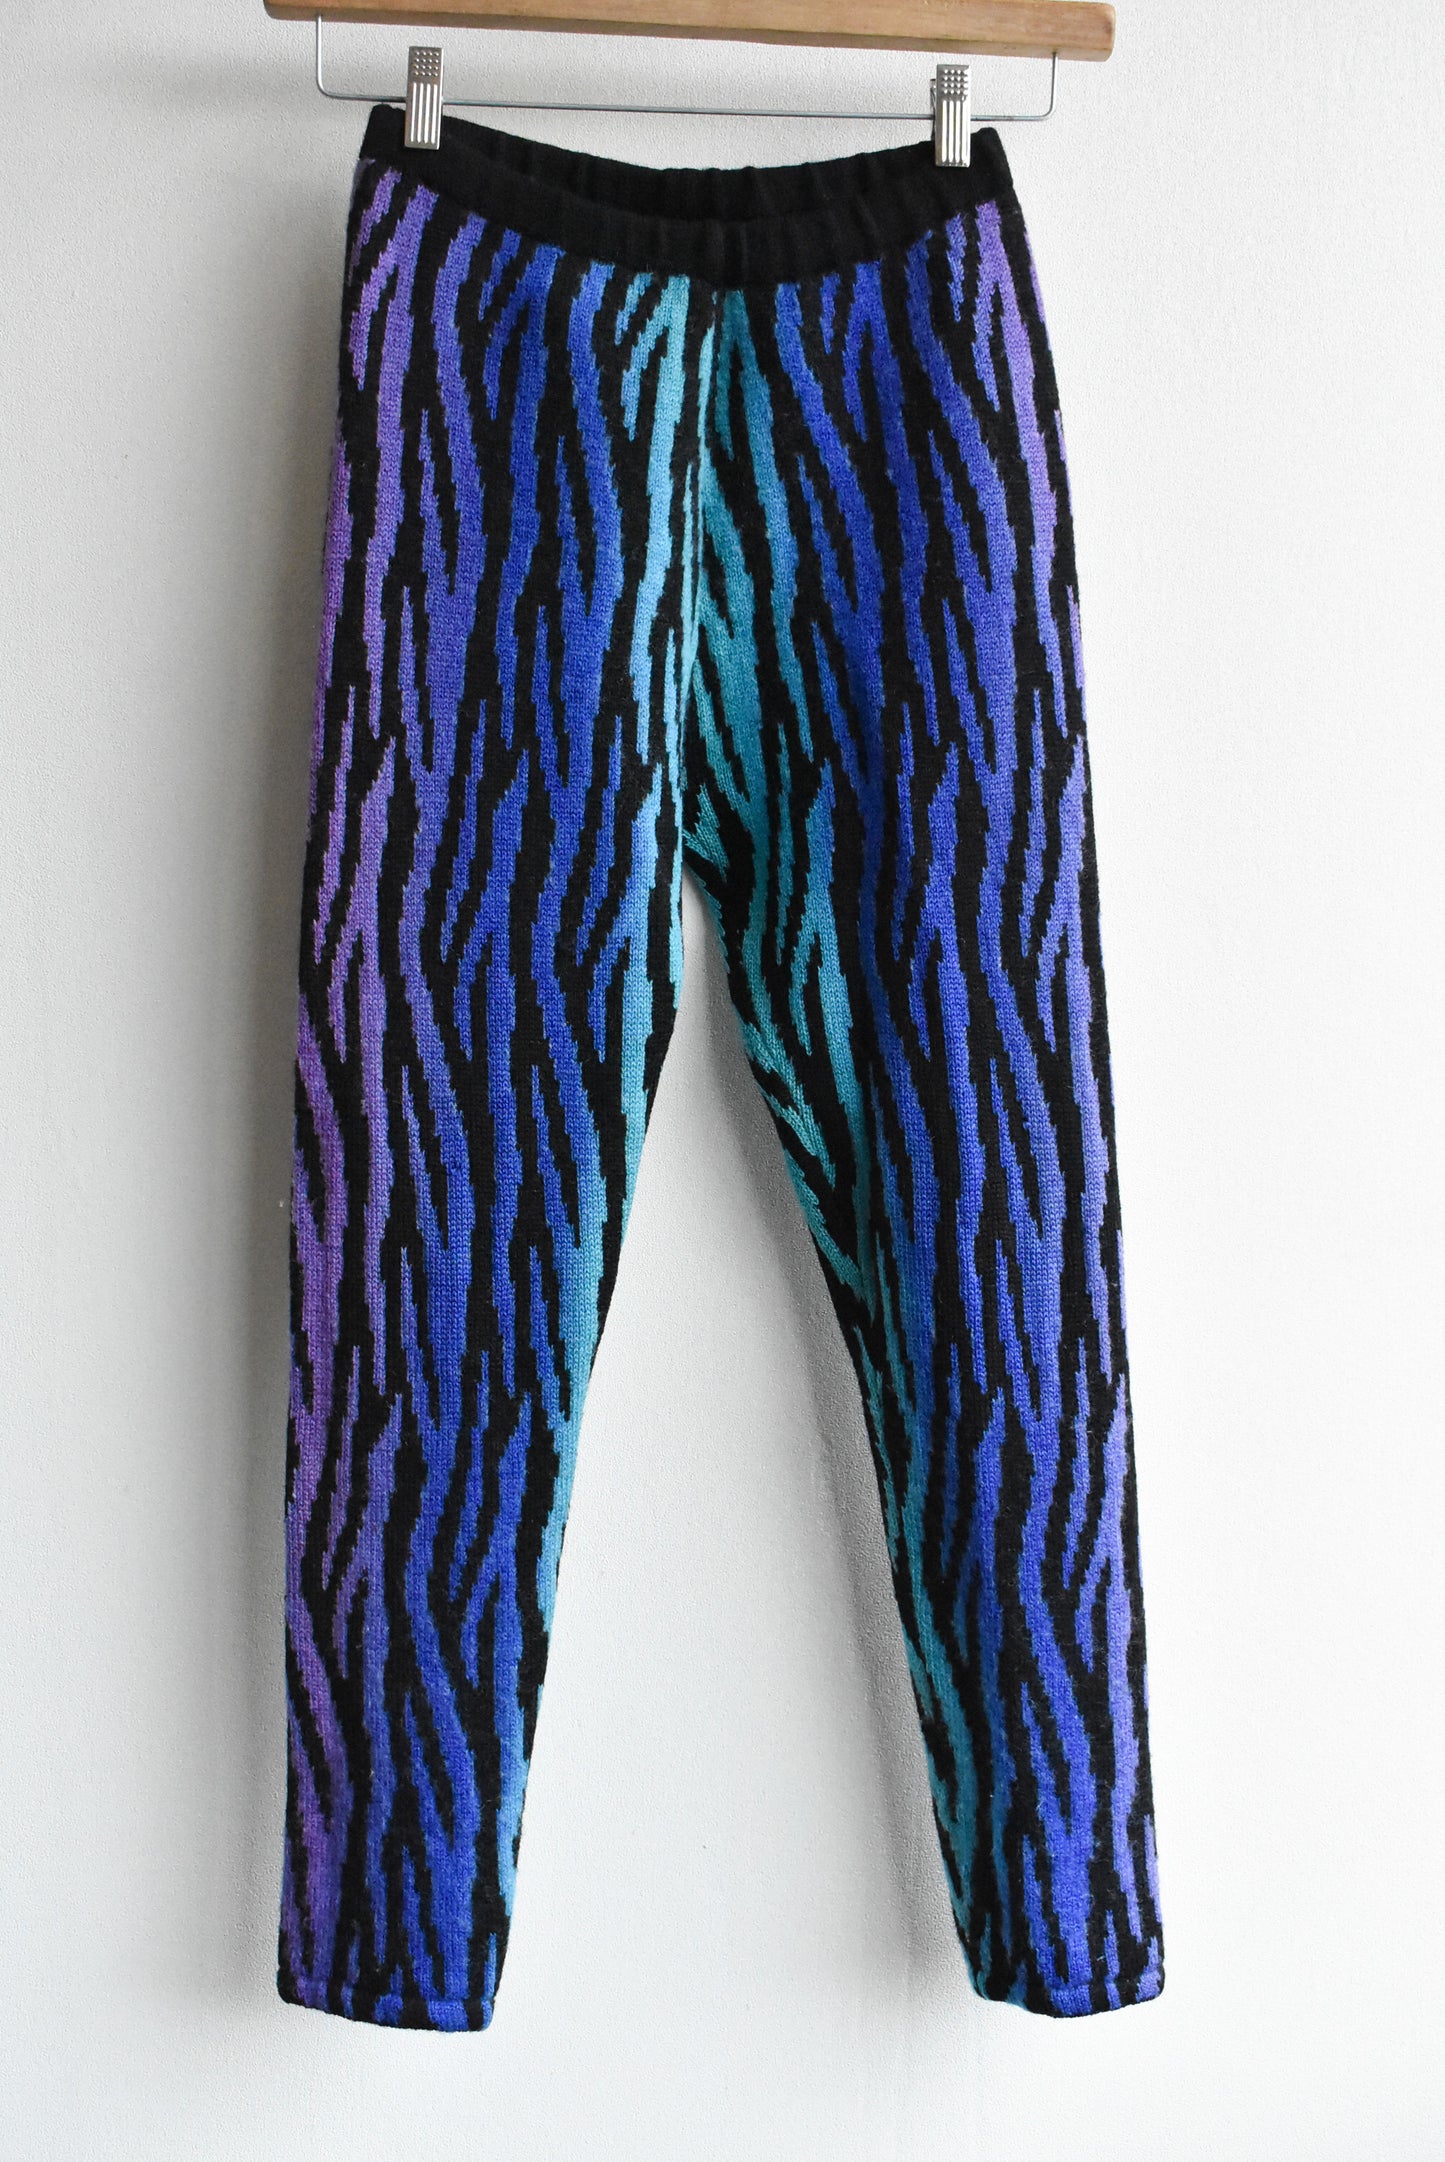 Moonbeams knitted leggings, S/XS